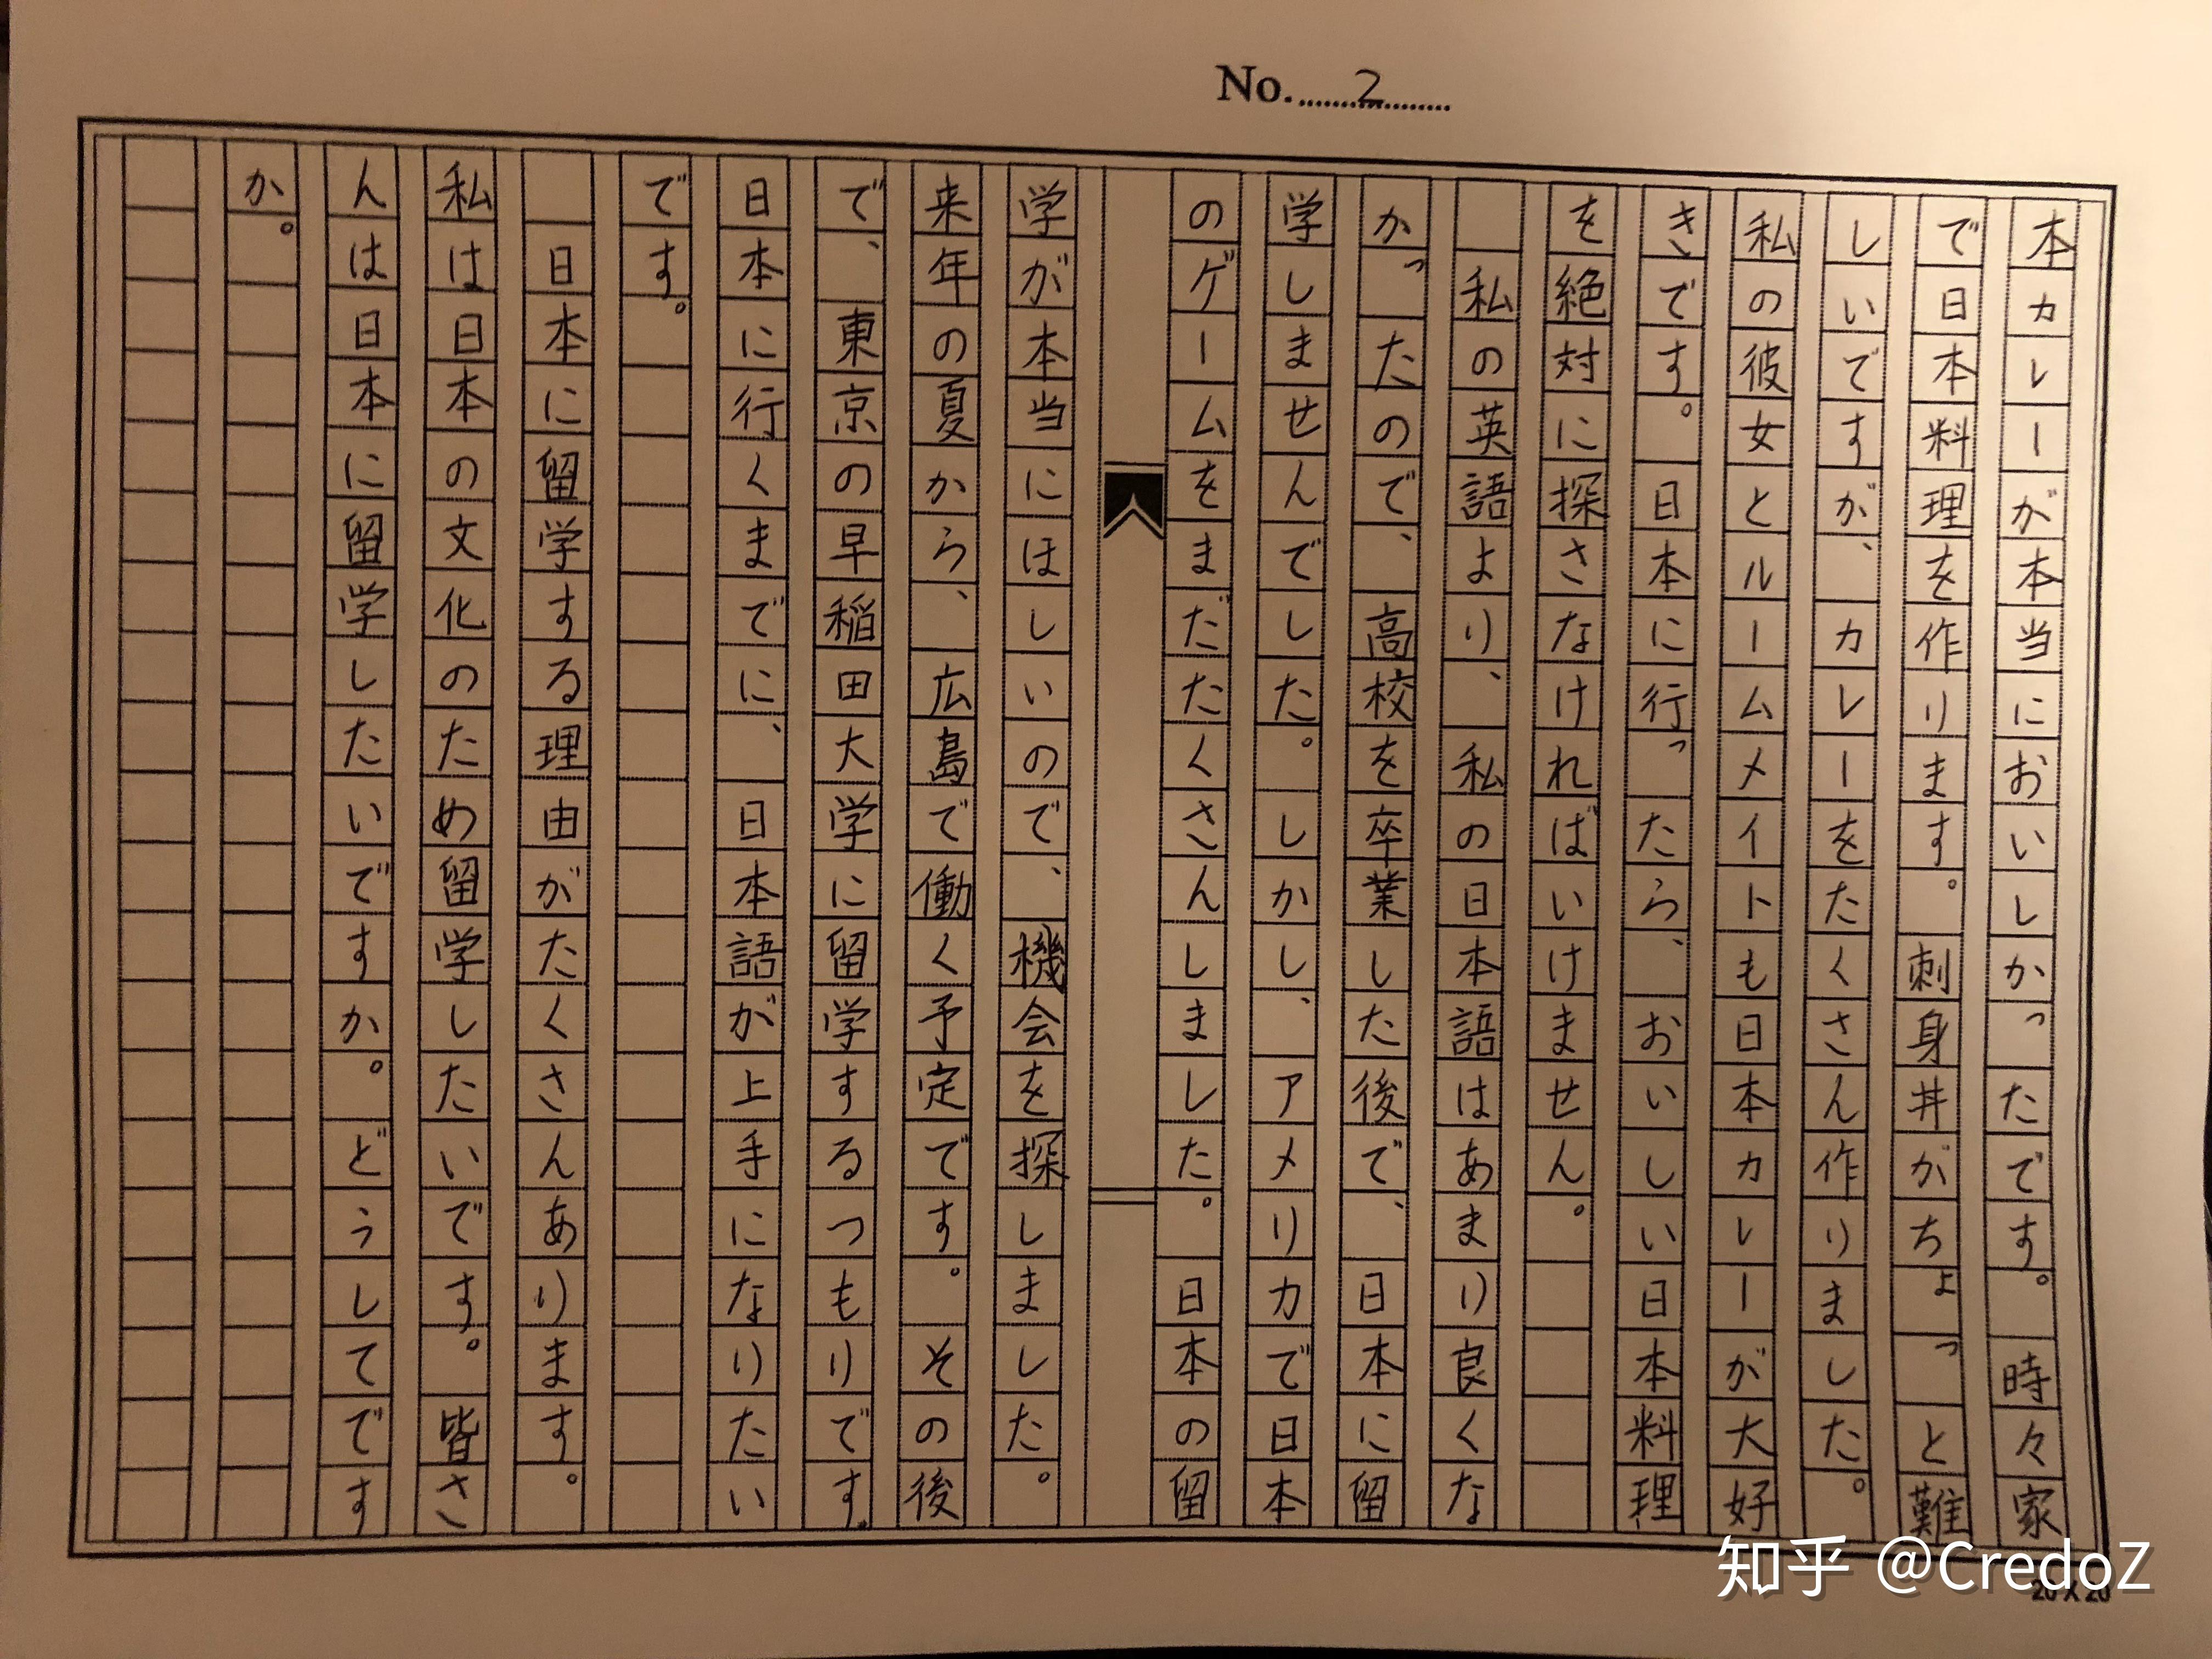 五十音临摹字帖来啦️写一手漂亮的日语 - 哔哩哔哩